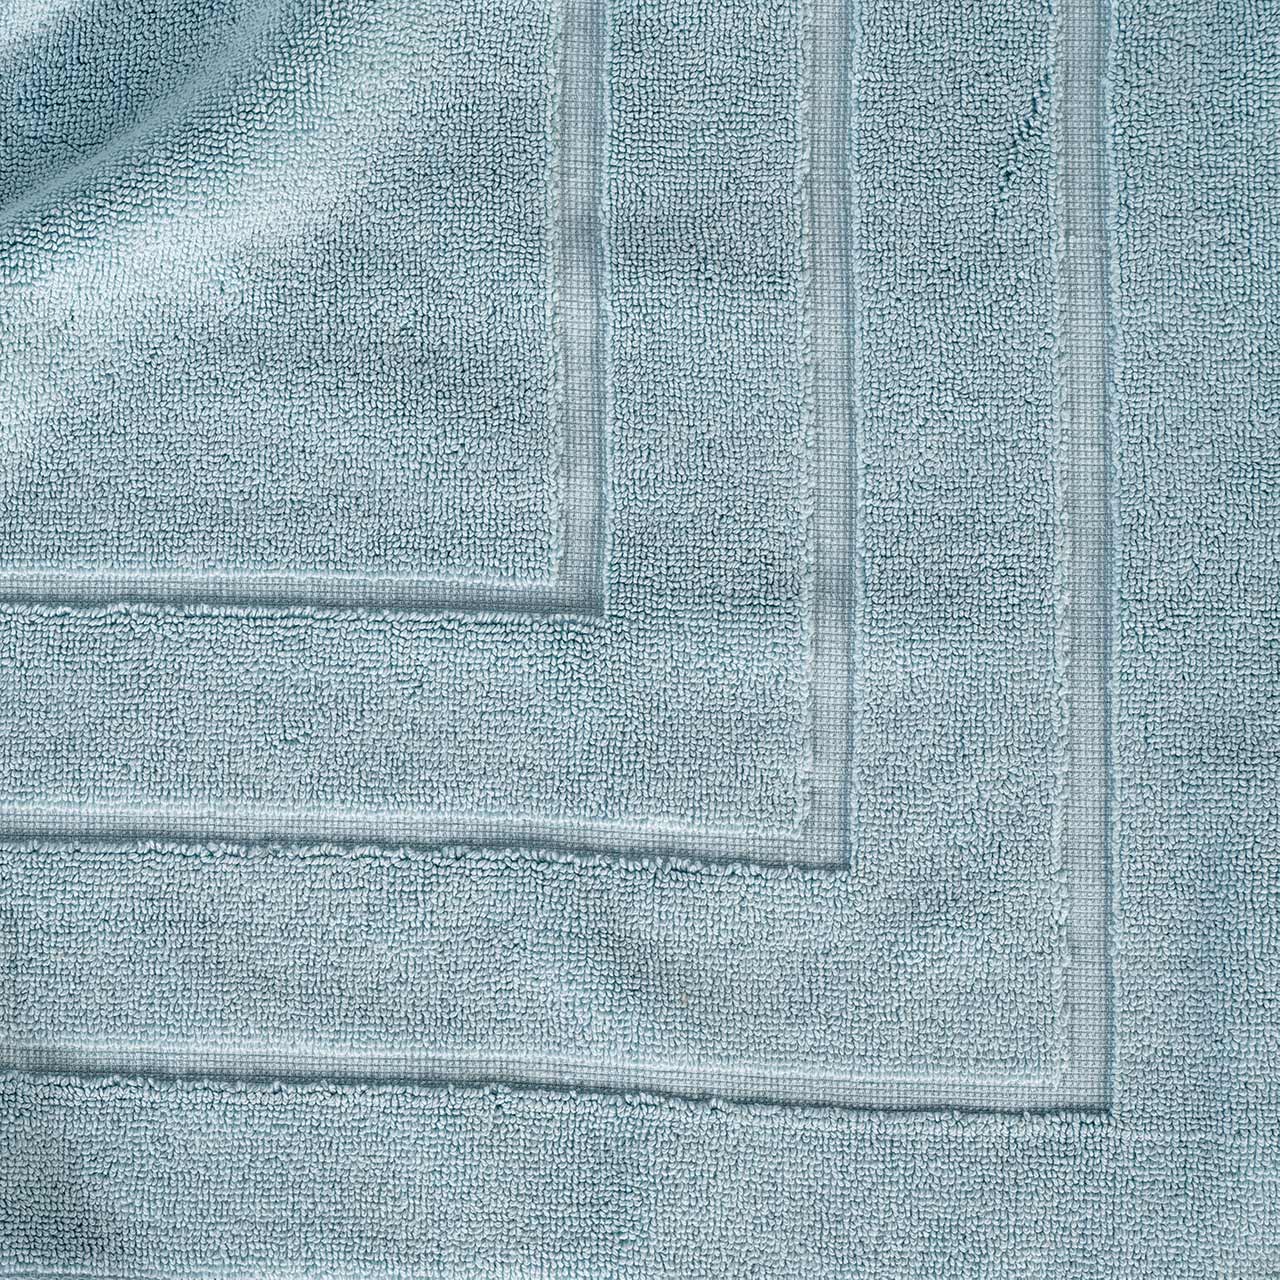 misty-blue,bath mat close up